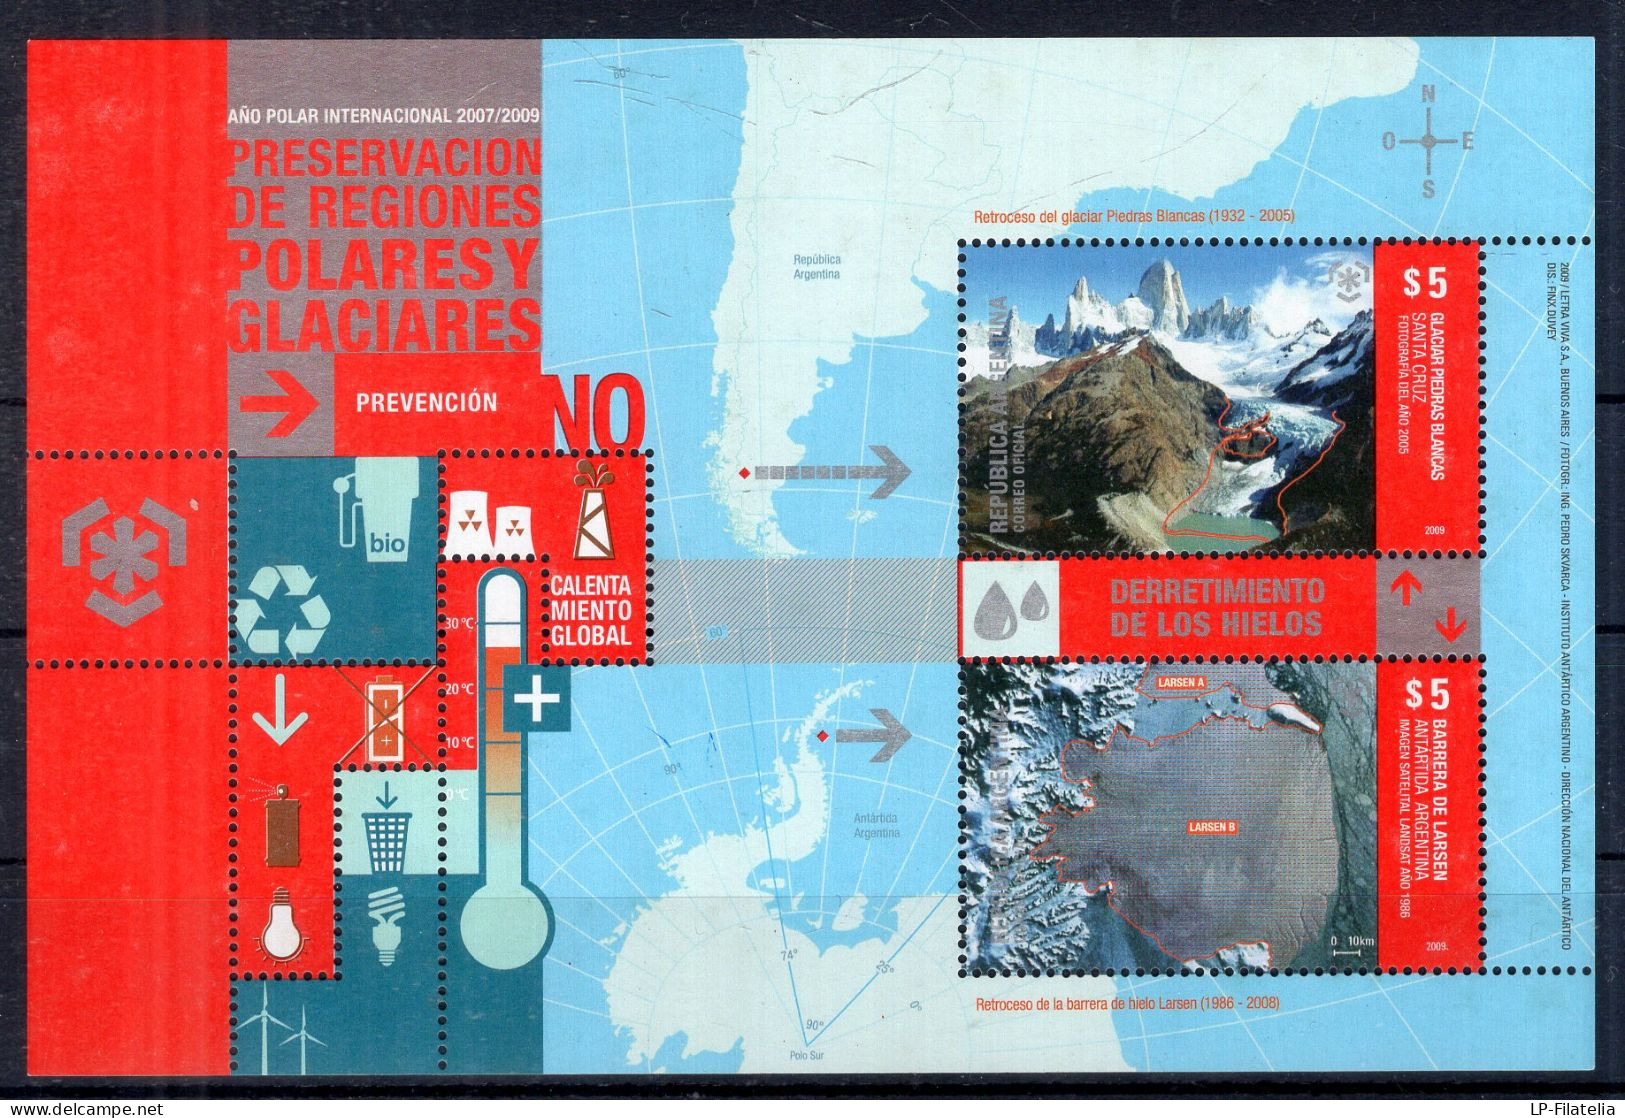 Argentina - 2009 - Souvenir Sheet - Preservación De Regiones Polares Y Glaciares. - Nuevos